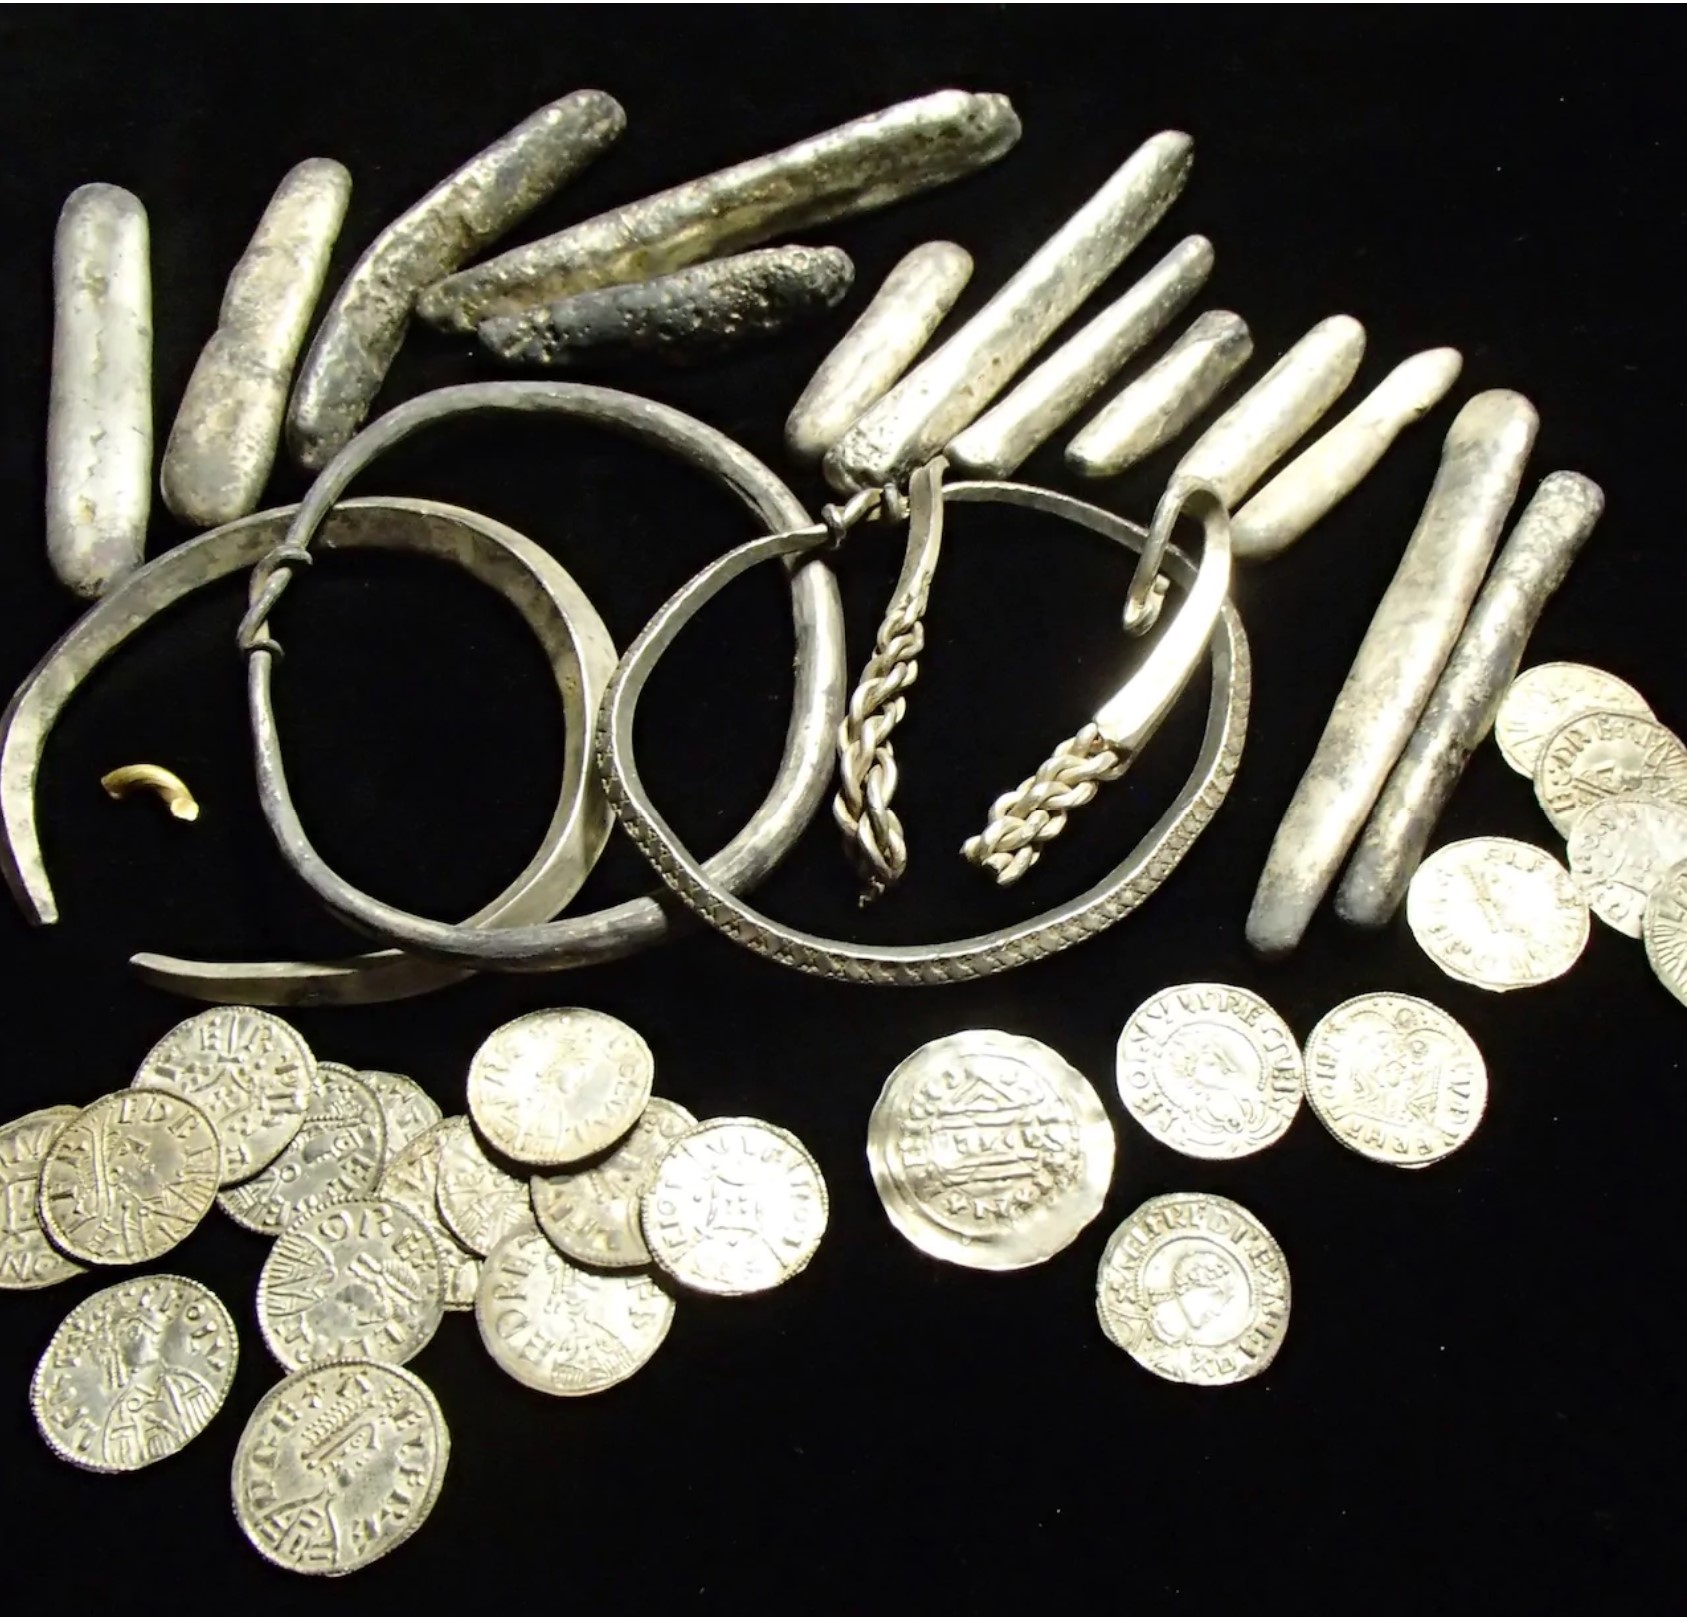 Od roku 1997 bylo Anglii objeveno přes 11 000 zákonem uznaných pokladů detektorem kovů